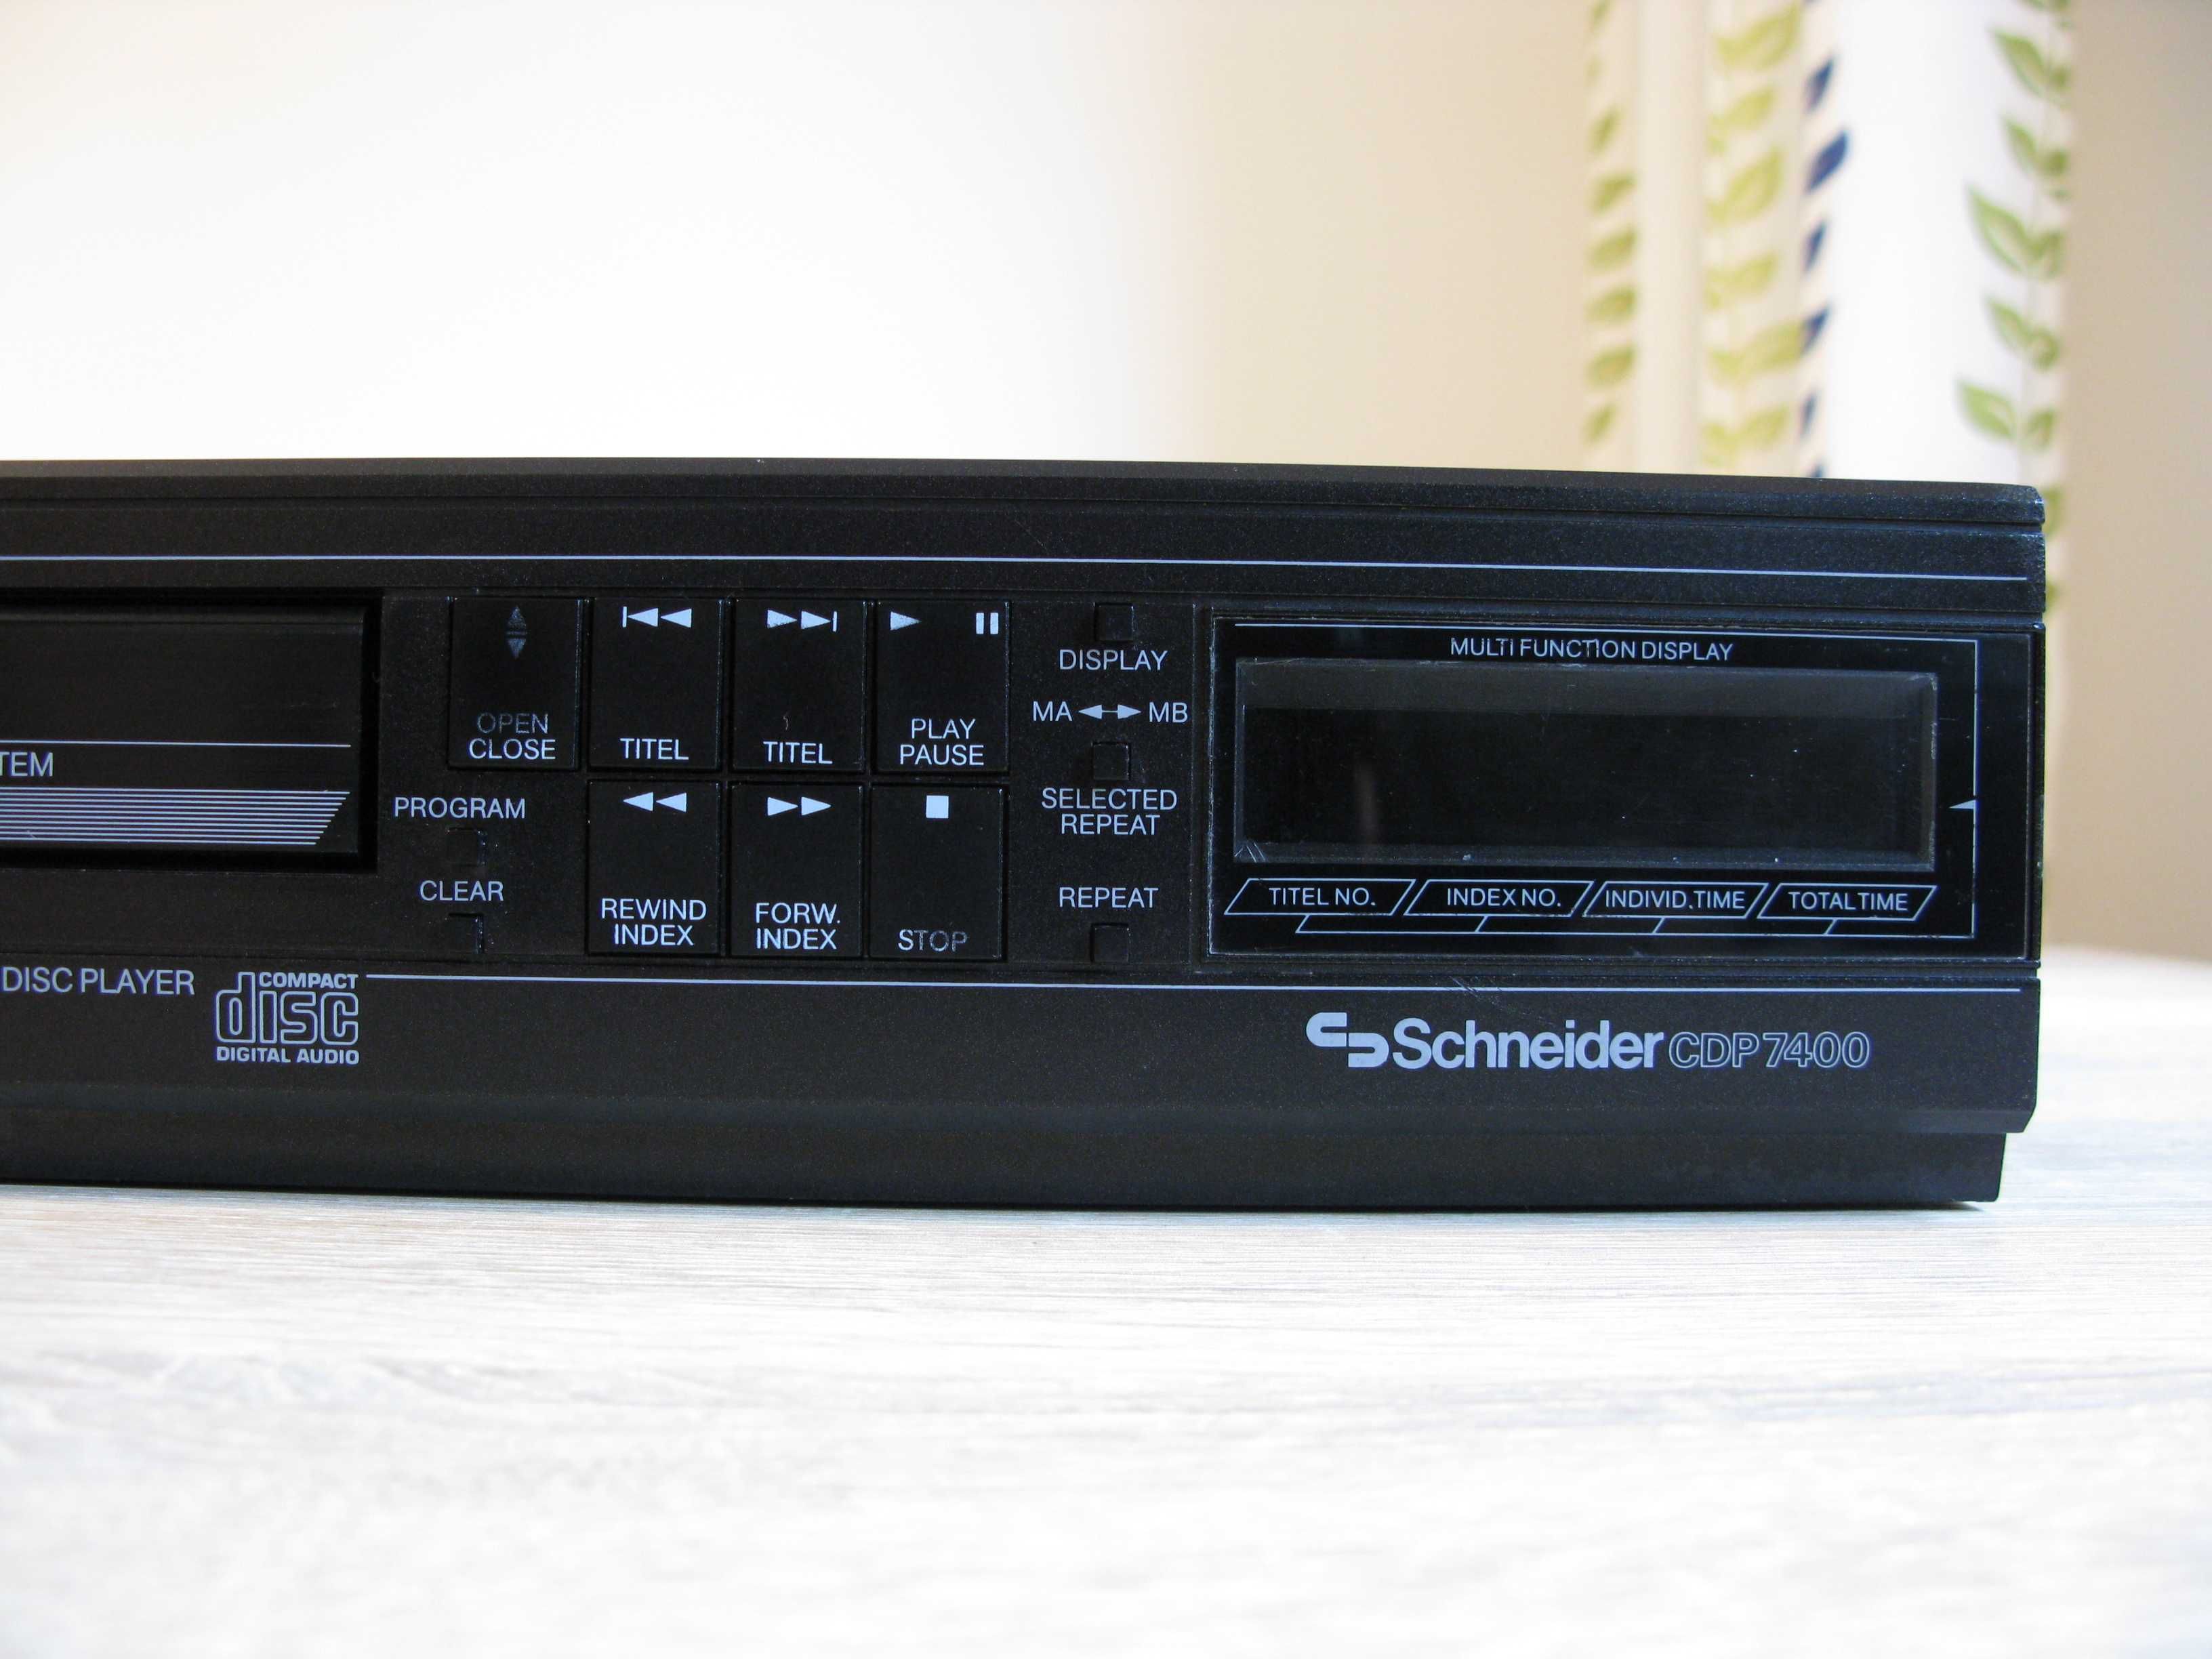 Odtwarzacz Schneider CDP 7400 sony KSS-123A CX20133 jak pioneer